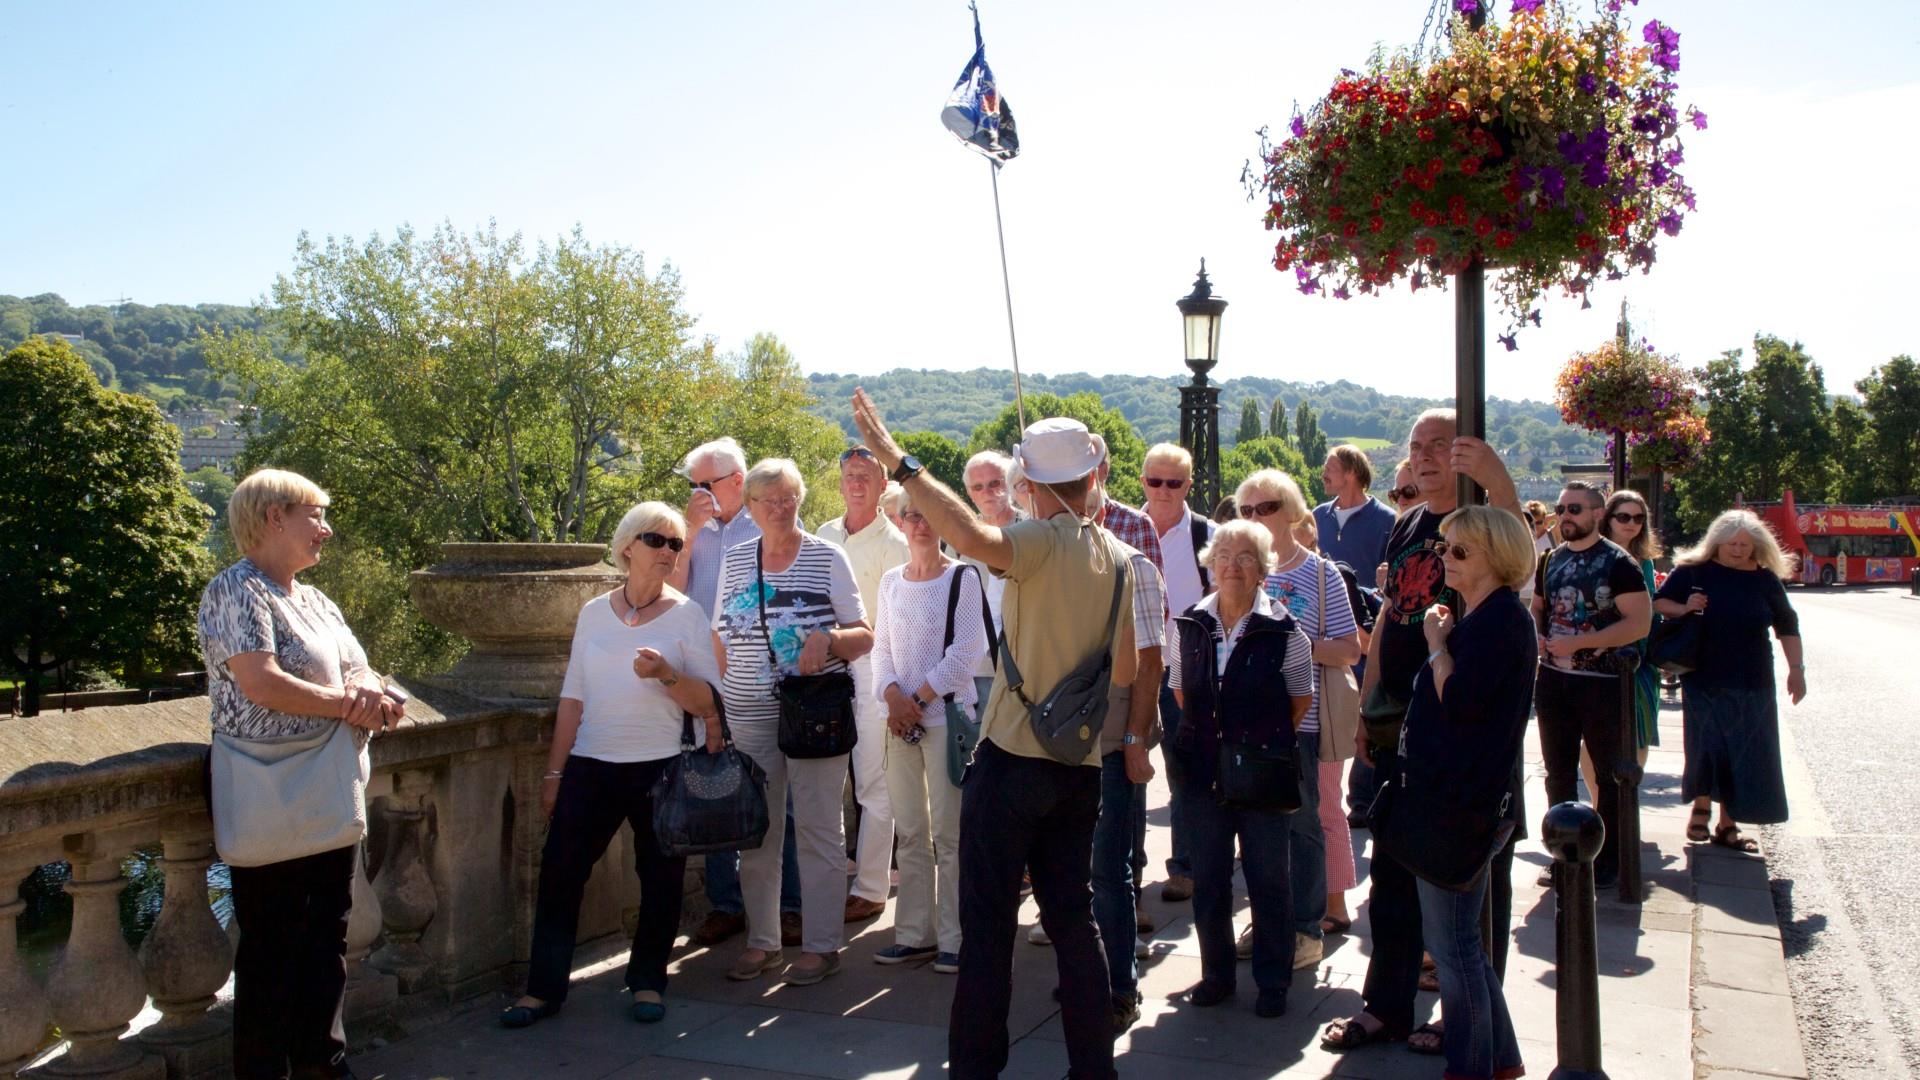 Group enjoy a walking tour of Bath